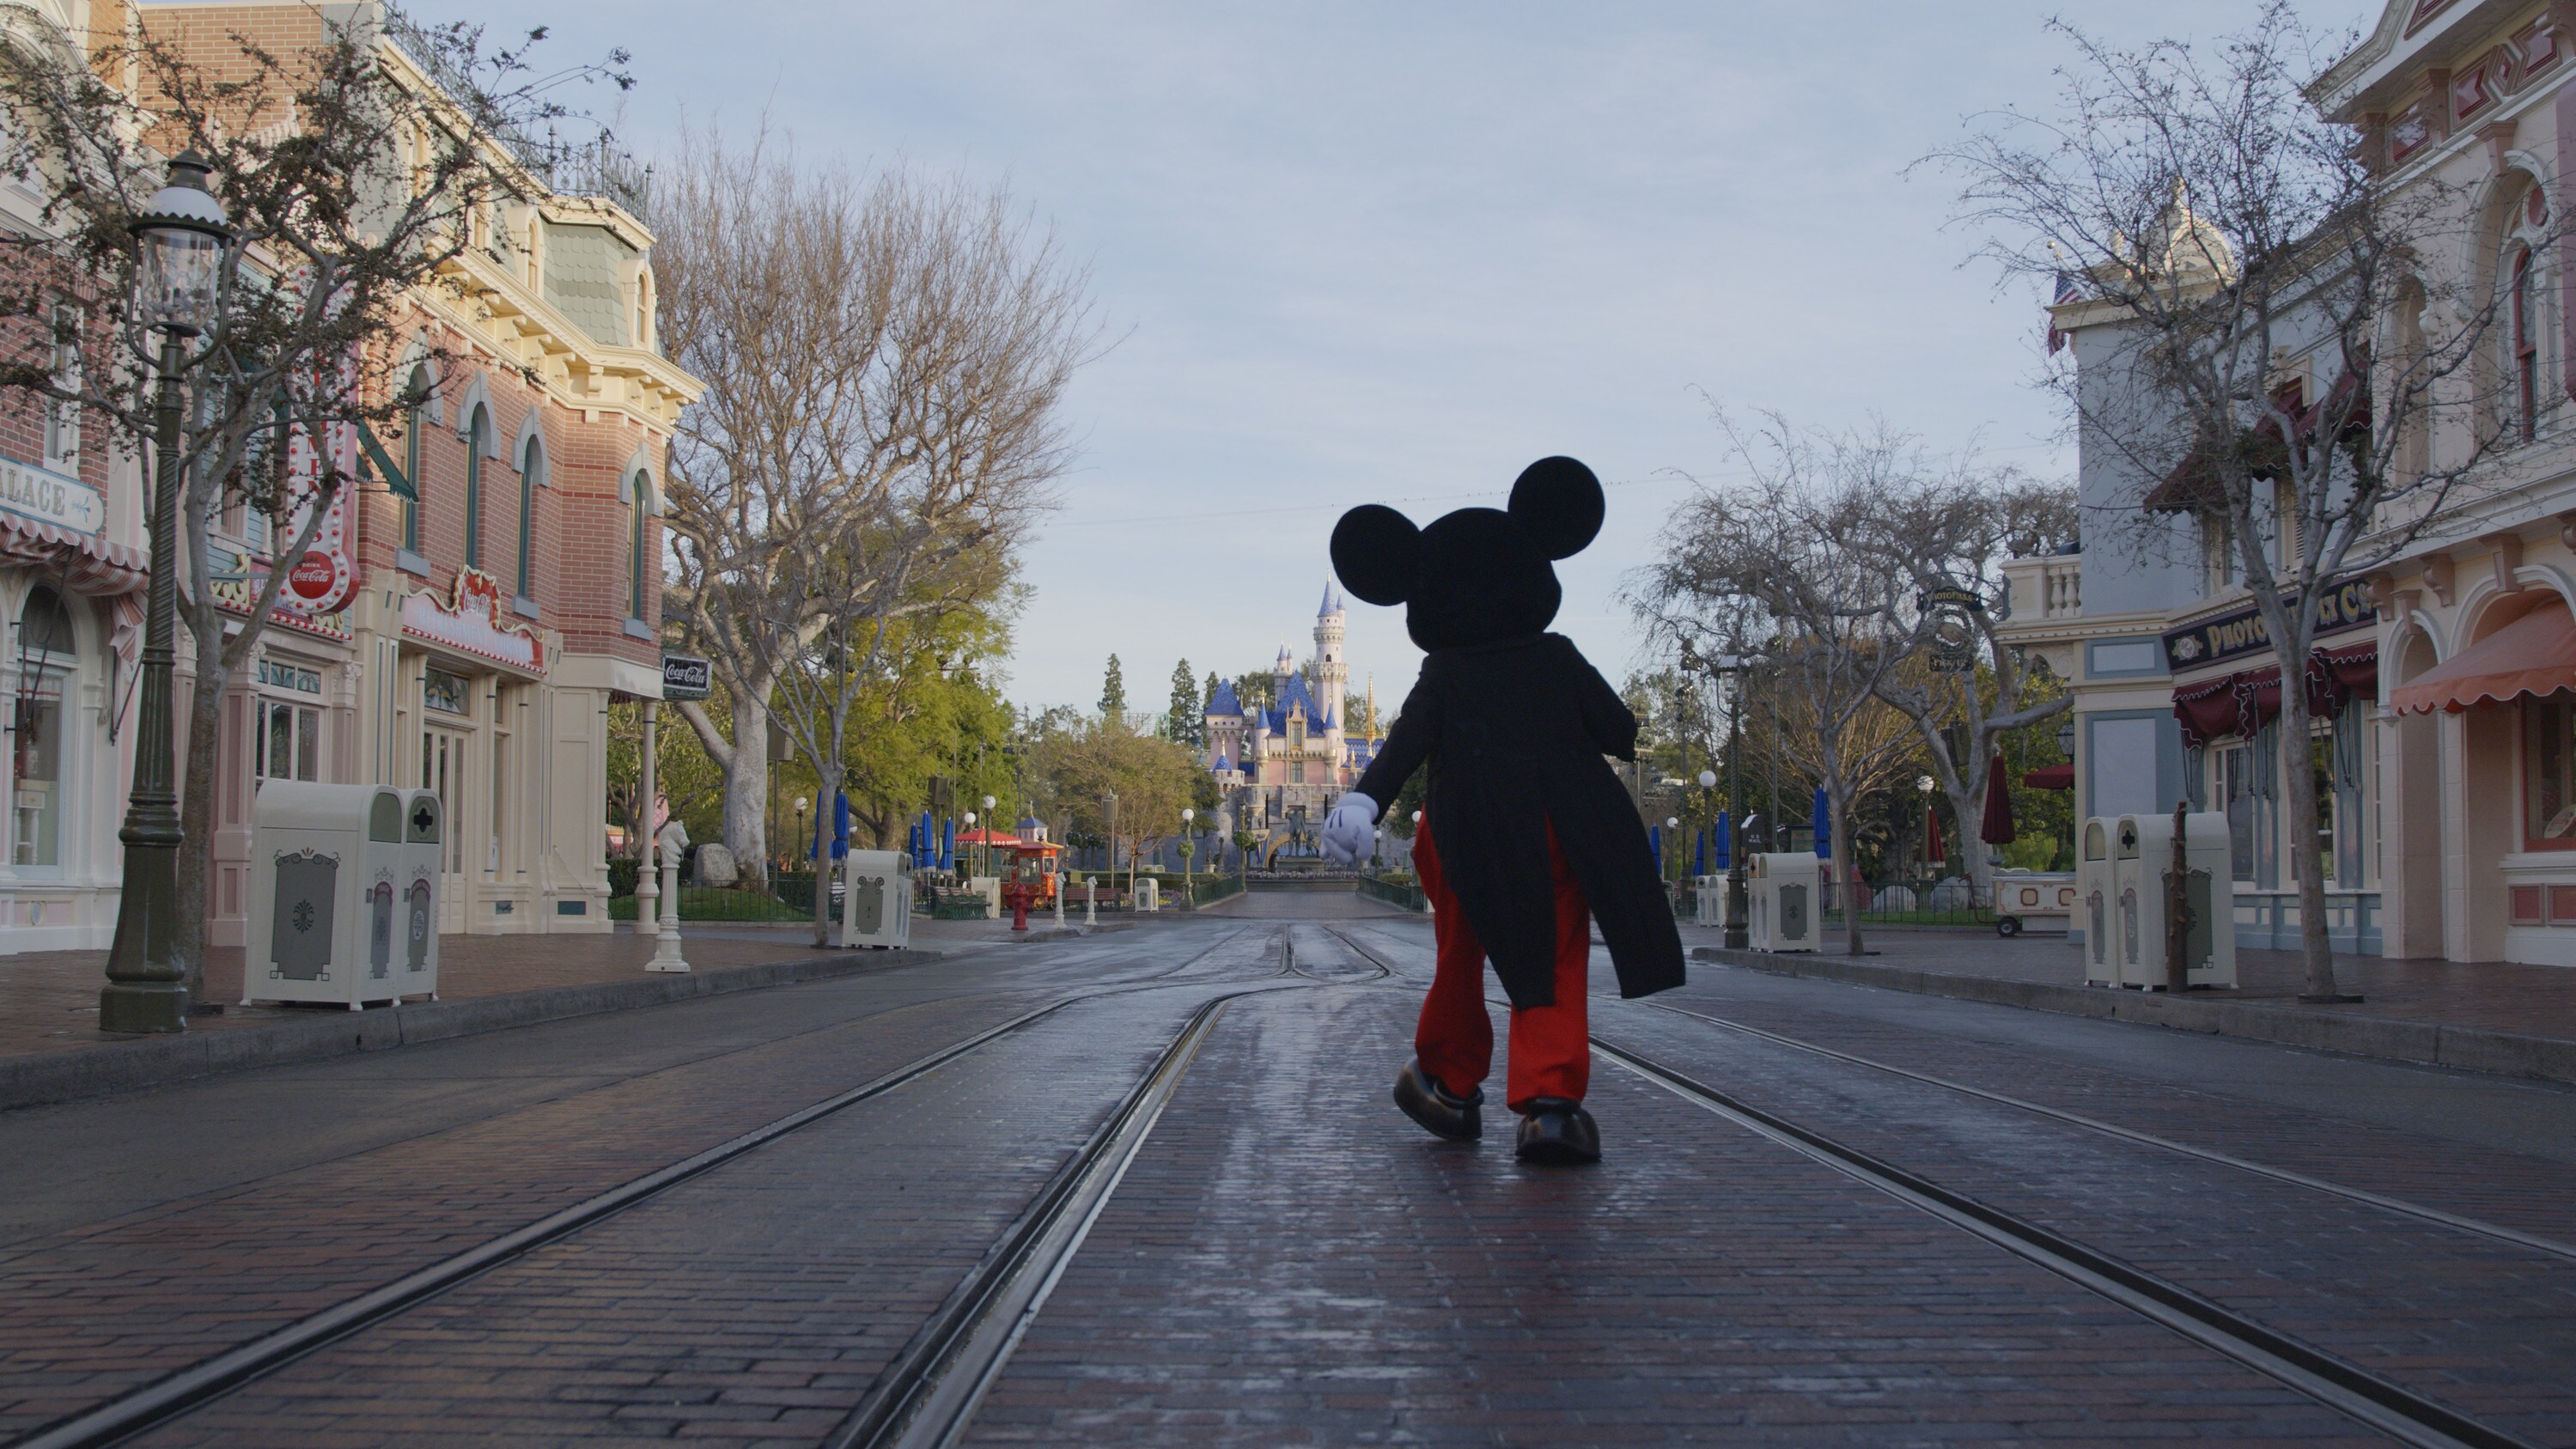 Mickey walks down Main Street USA at Disneyland. (Credit: Mortimer Productions)